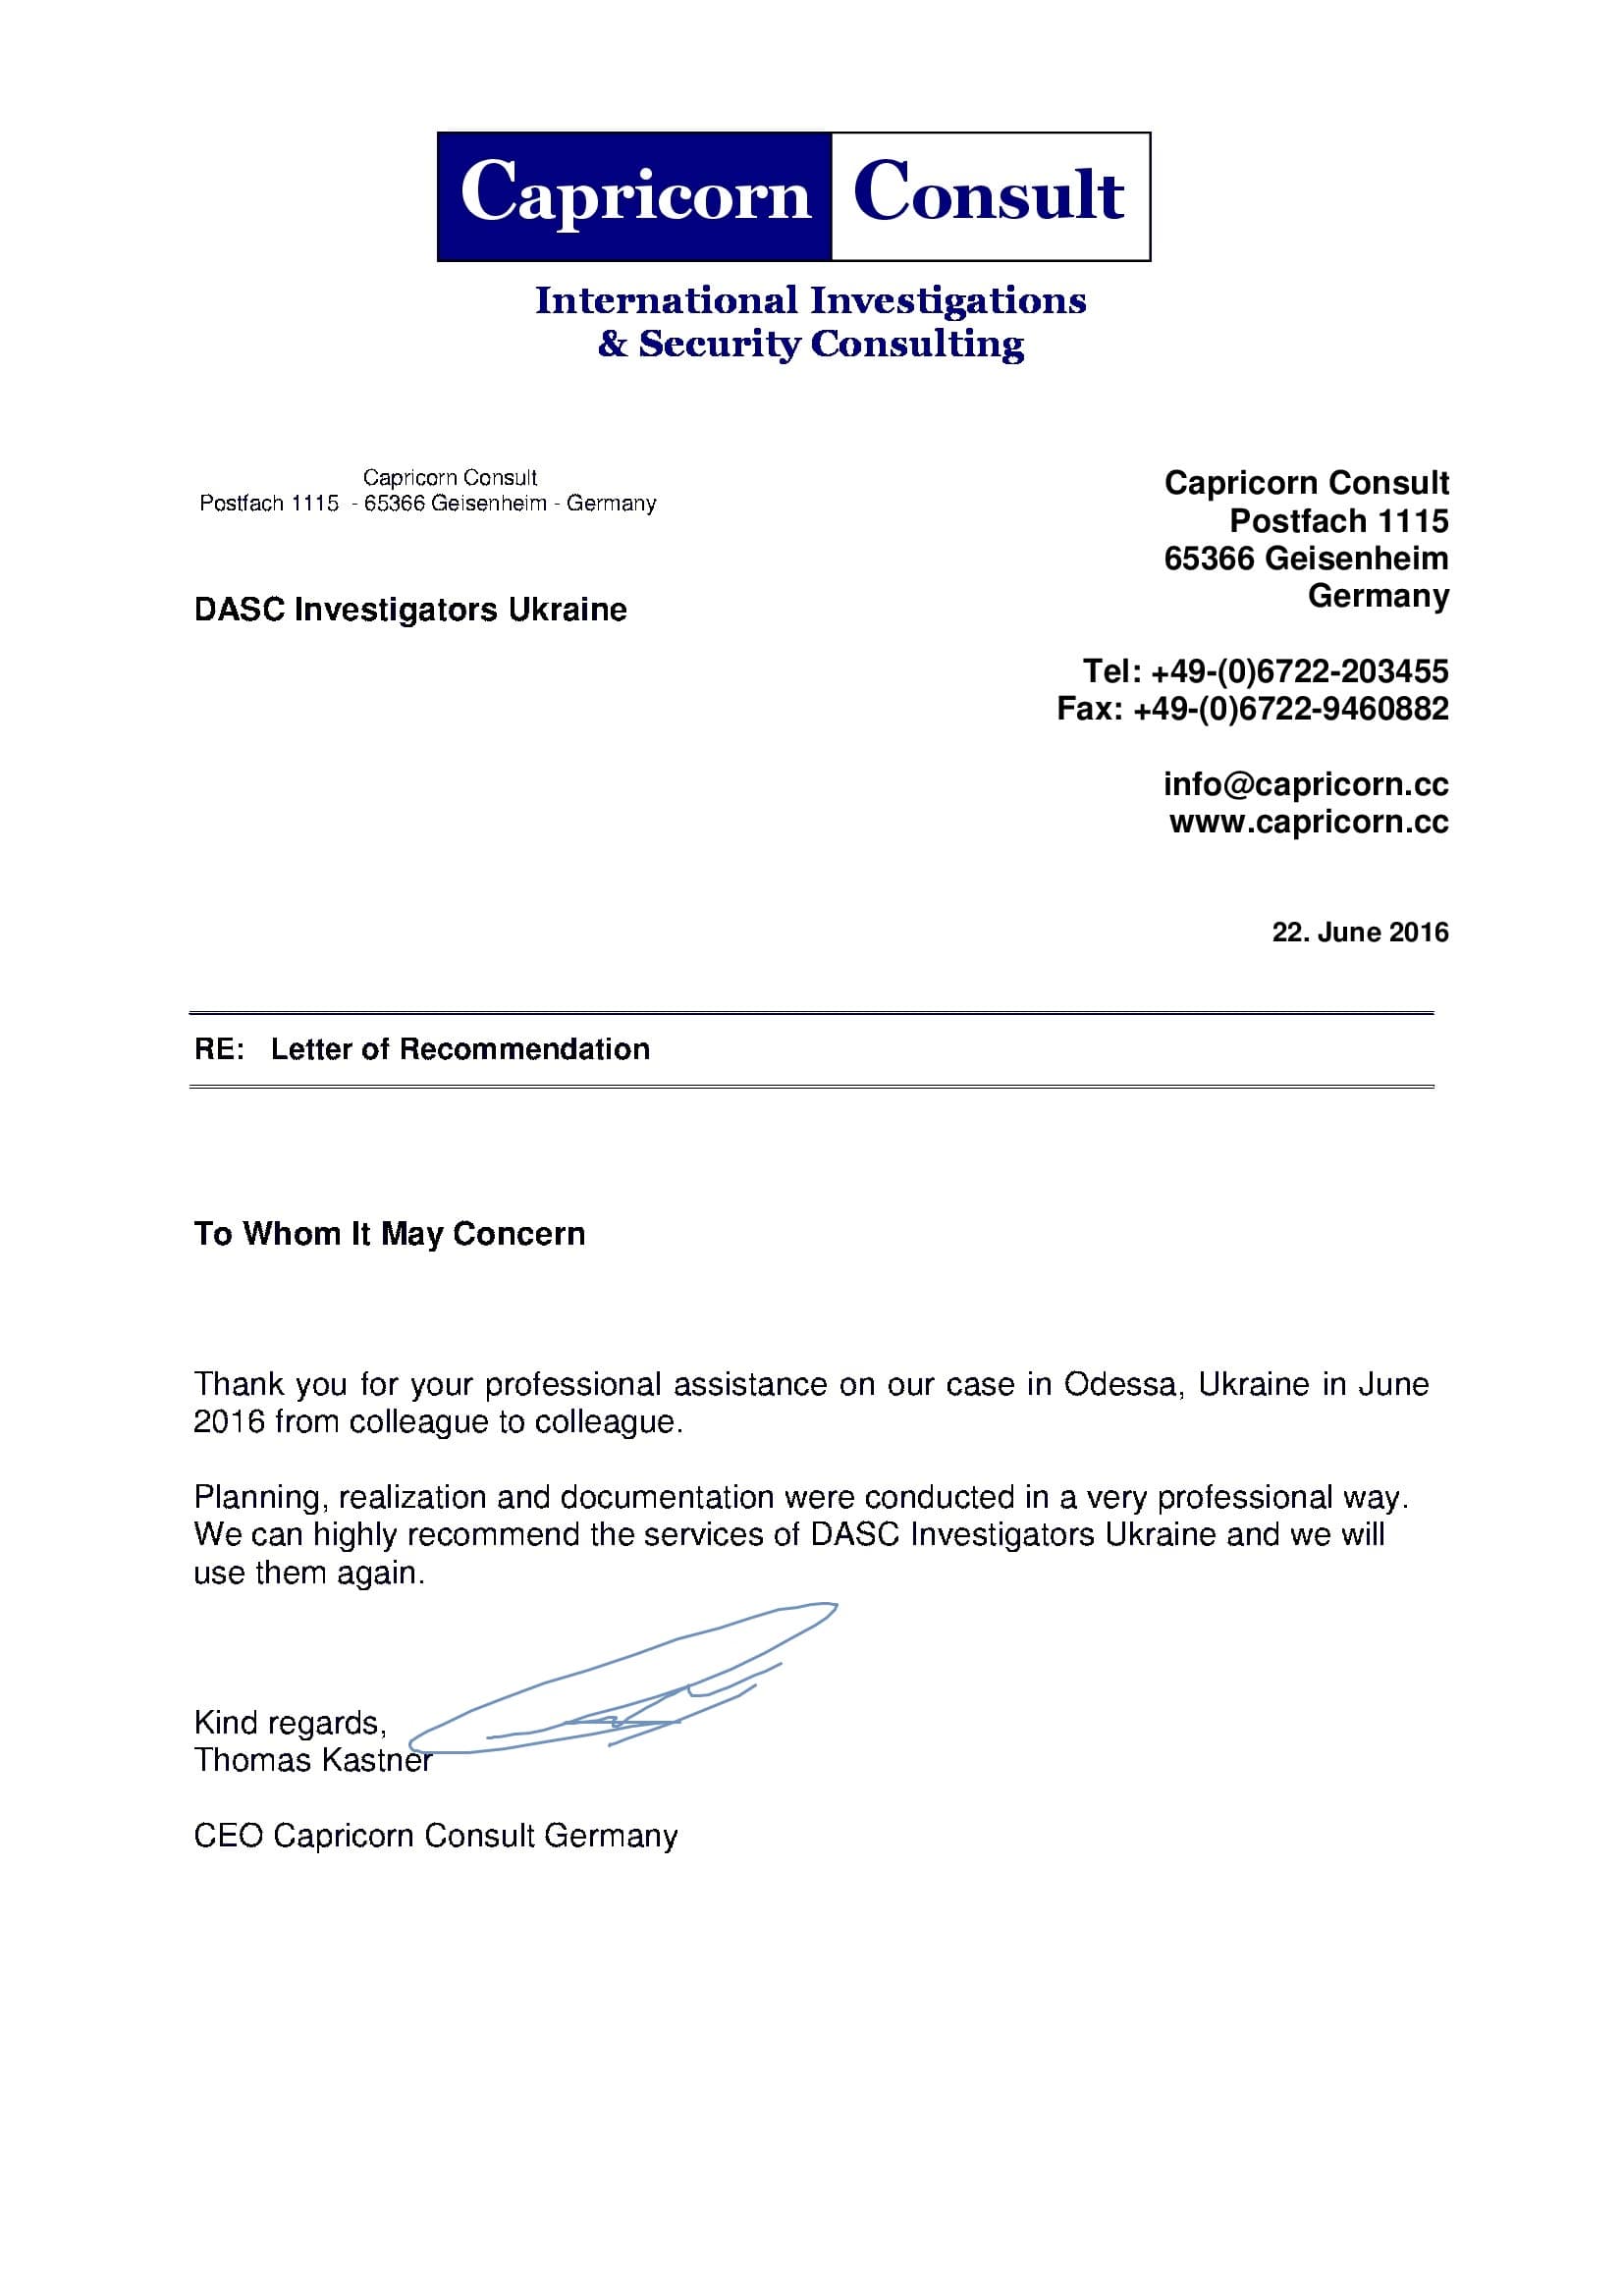 Рекомендательное письмо DASC из Германии